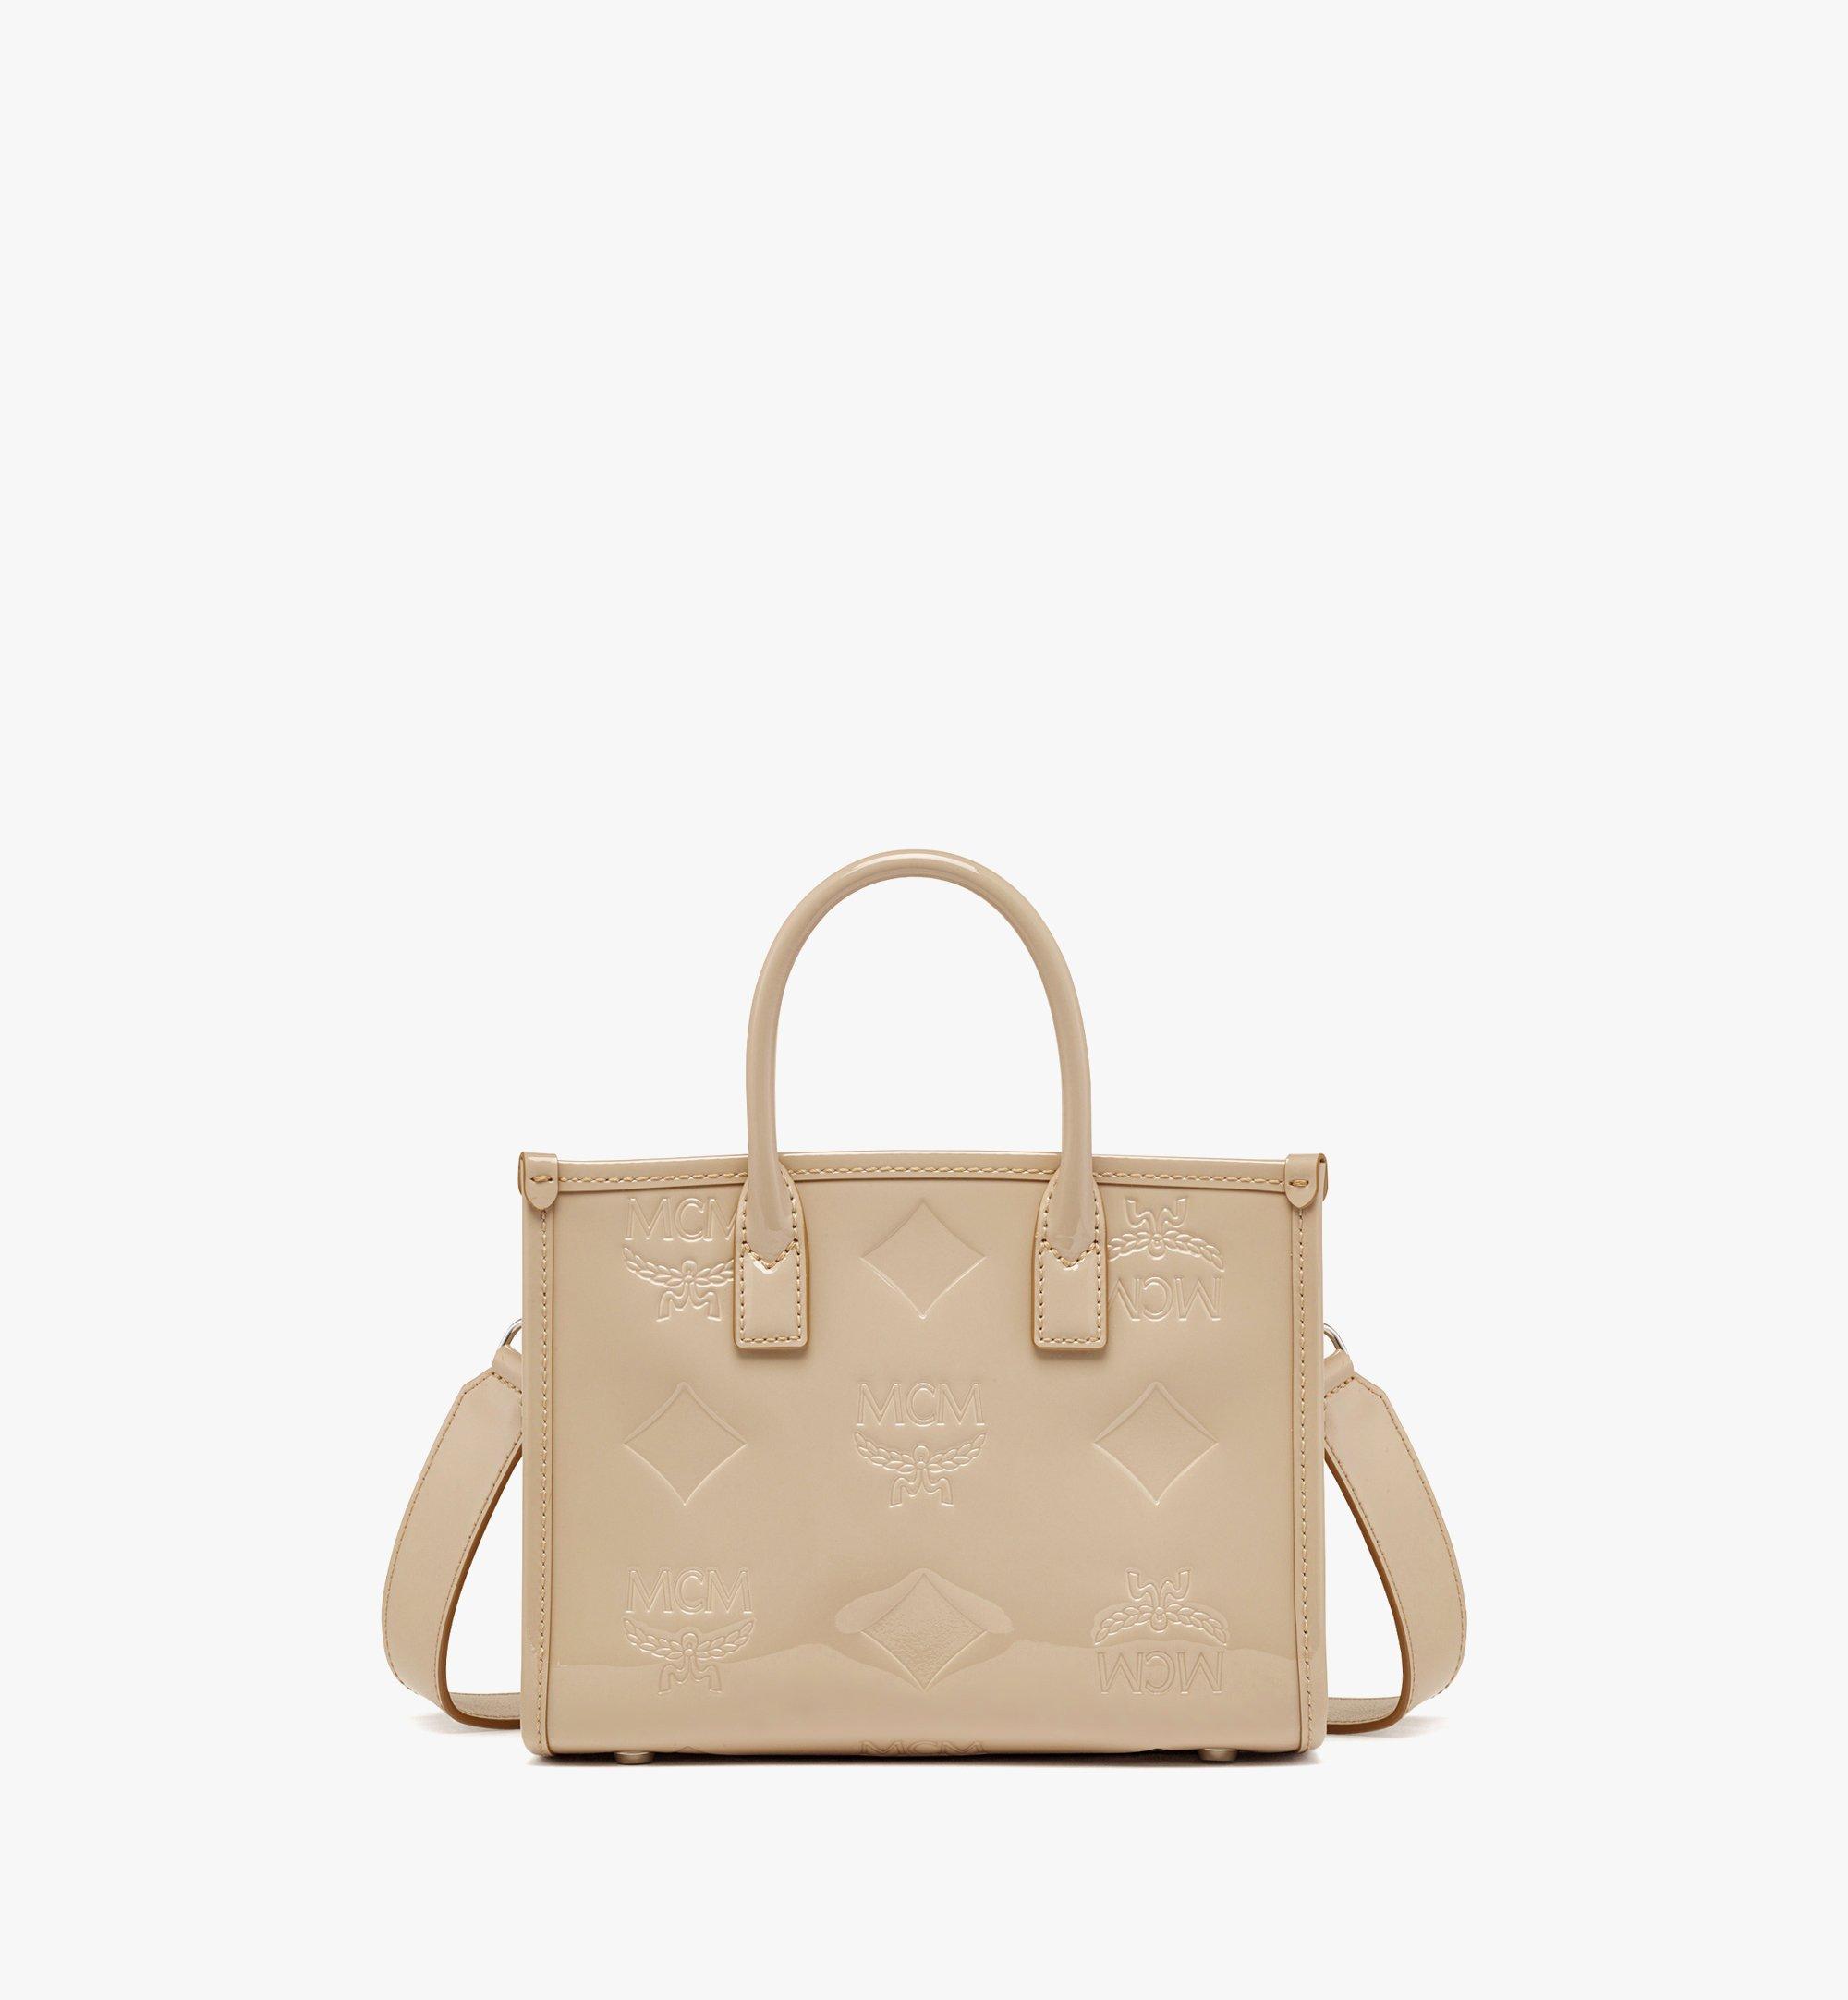 MCM: handbag for woman - Green  Mcm handbag MWTCSSX01 online at